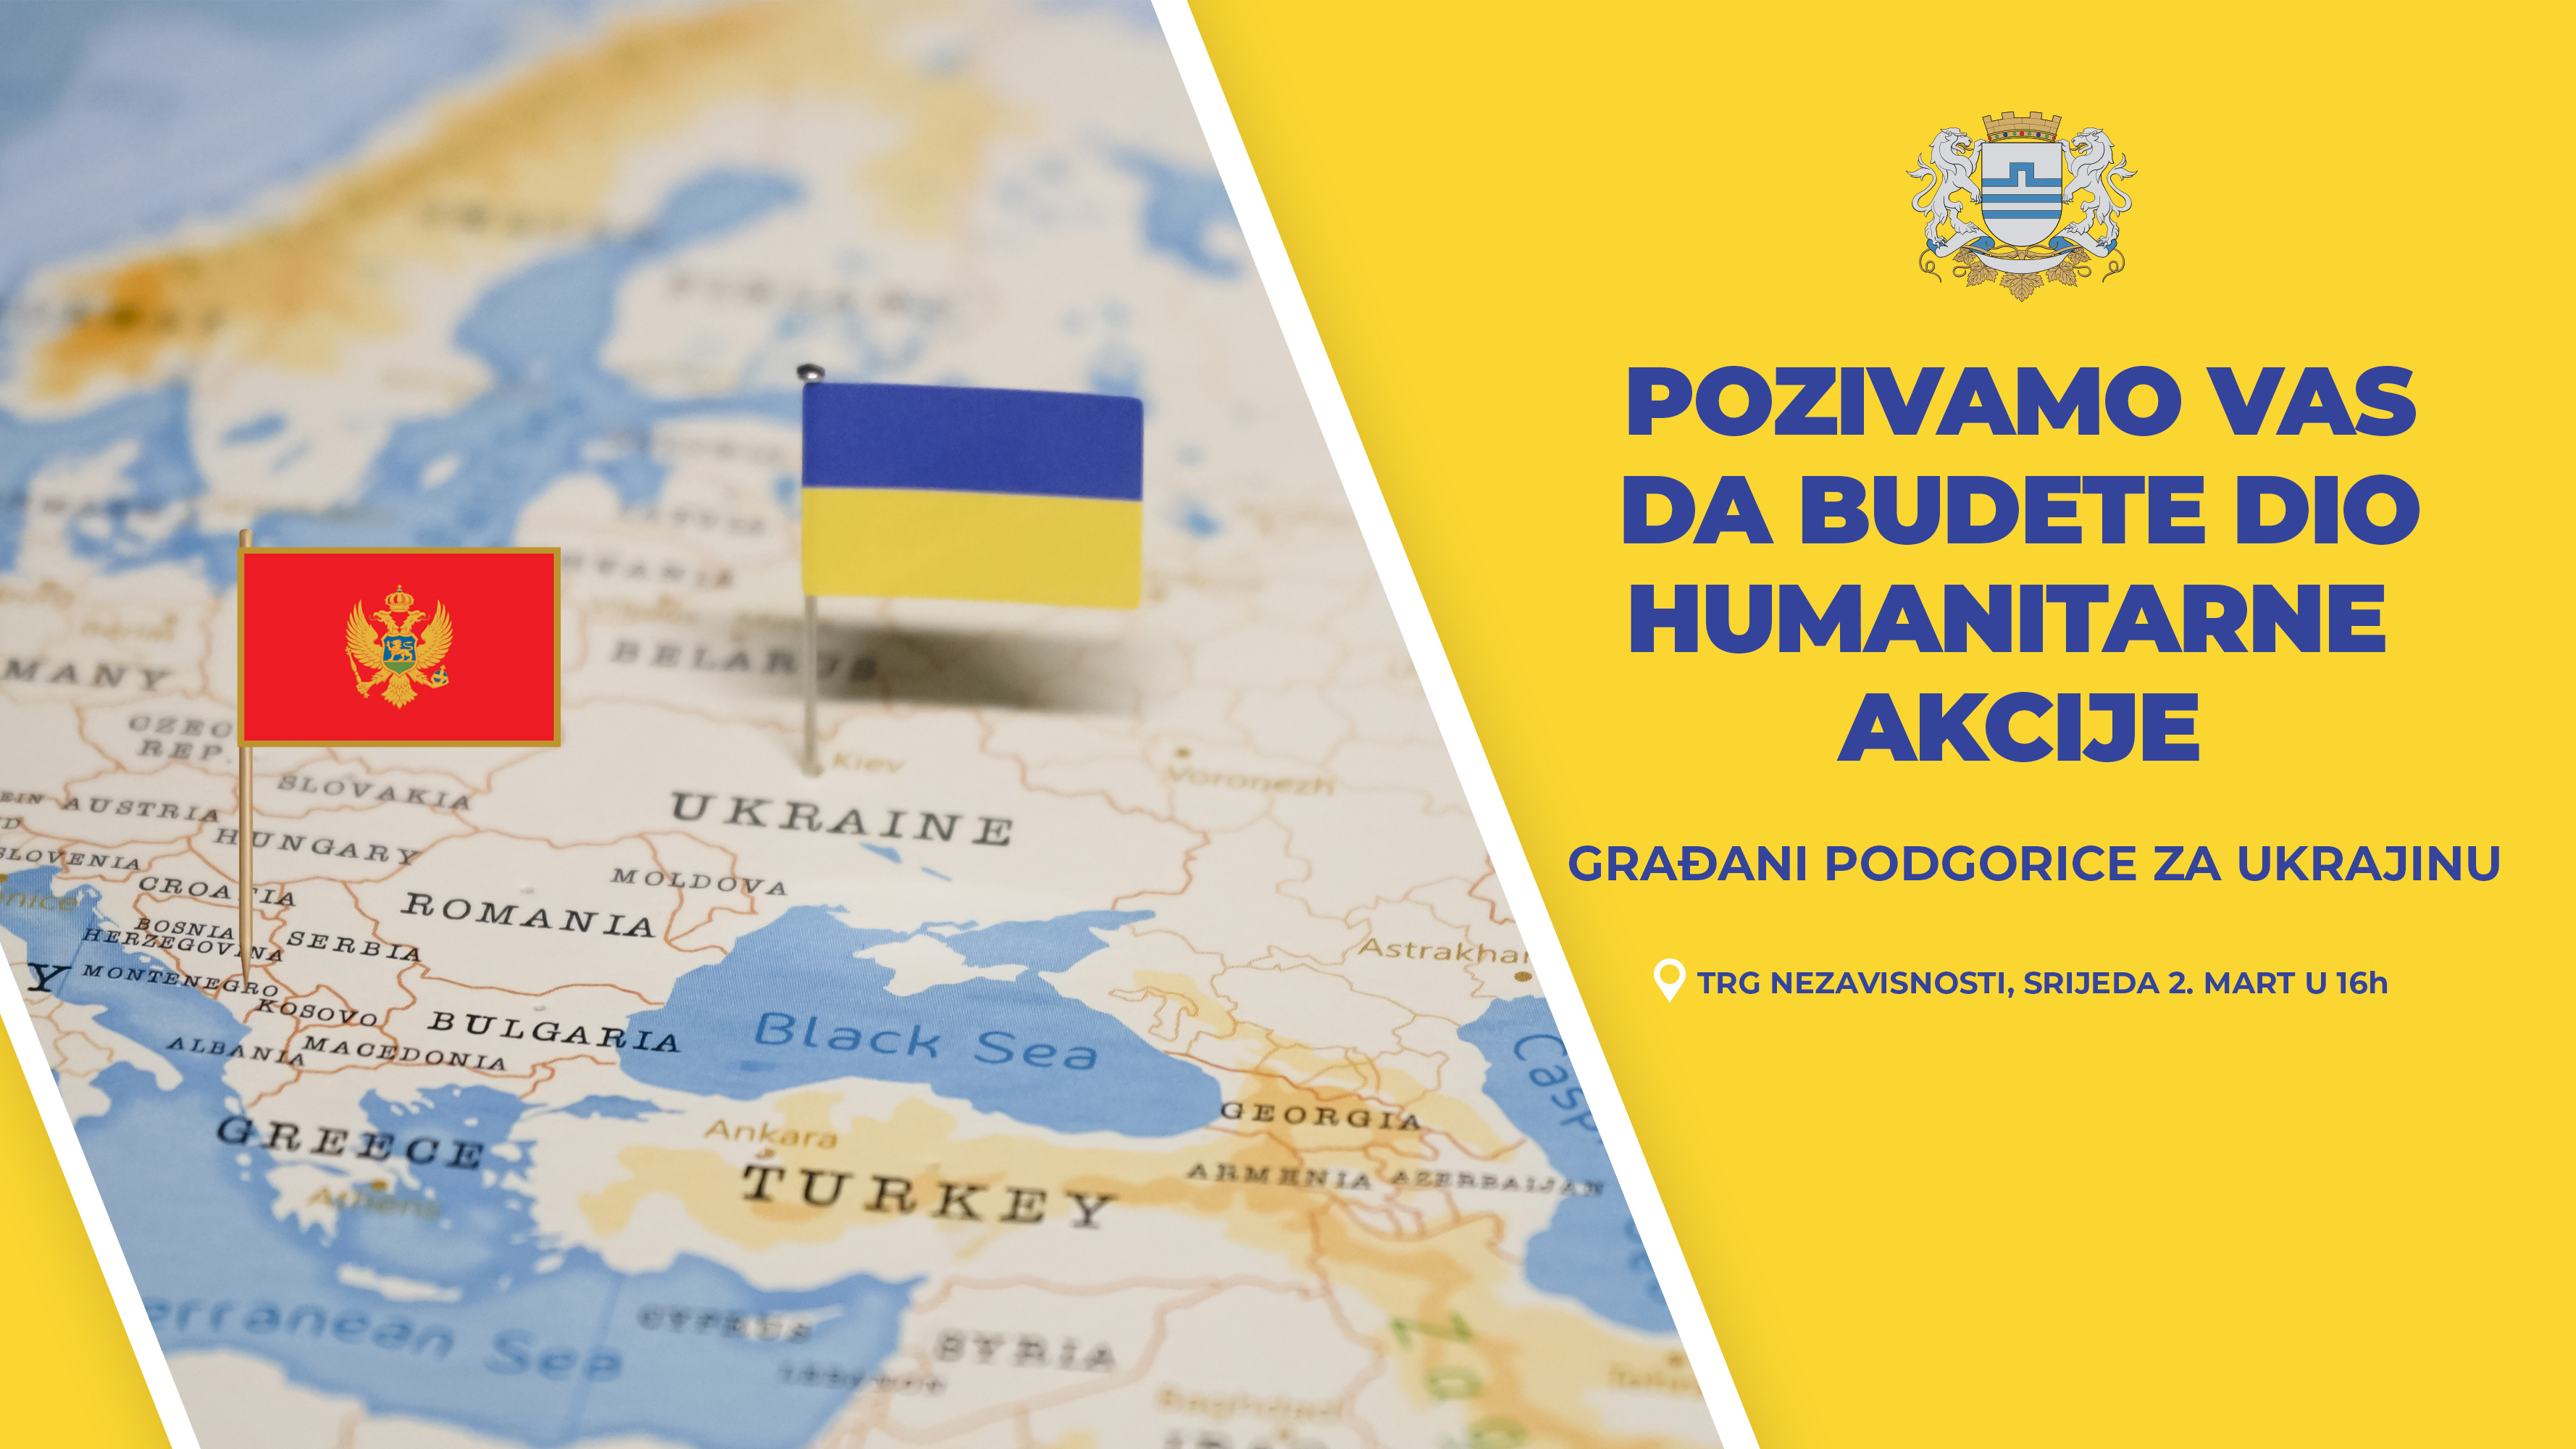 Pokrenuta humanitarna akcija: Građani Podgorice za Ukrajinu